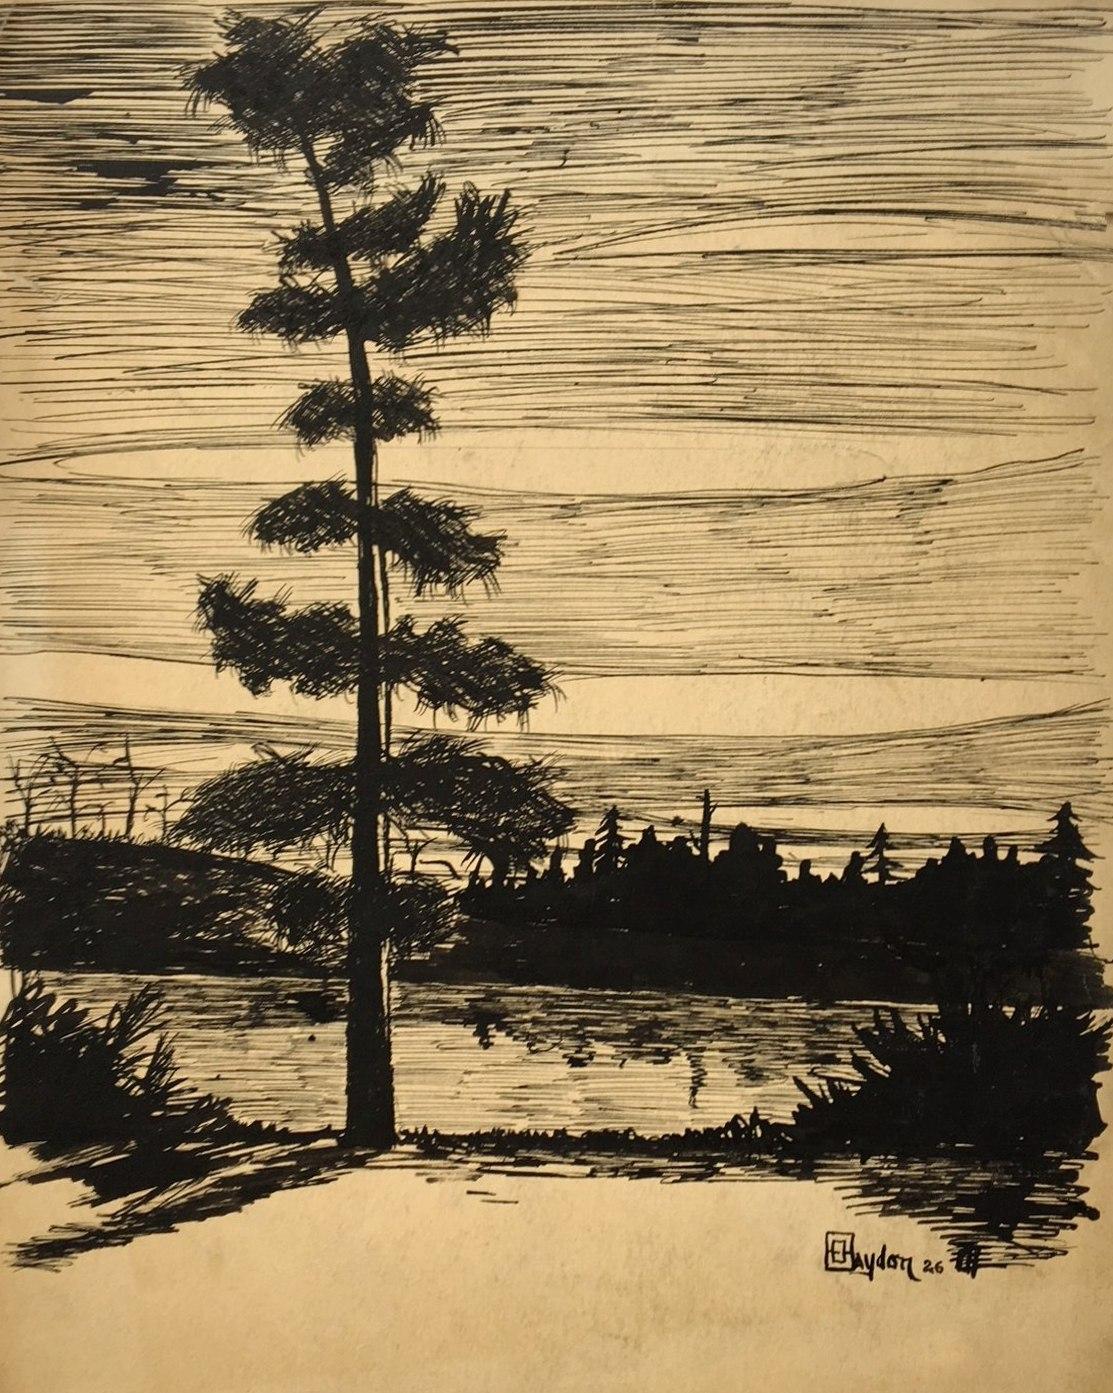 Dessin à l'encre sur papier de 1926 représentant un cèdre et un lac nordique, réalisé par l'artiste Harold Haydon.  

Harold Emerson Haydon est né à Fort William, Ontario, Canada en 1909.   Haydon est arrivé à Chicago avec sa famille en 1917 et a